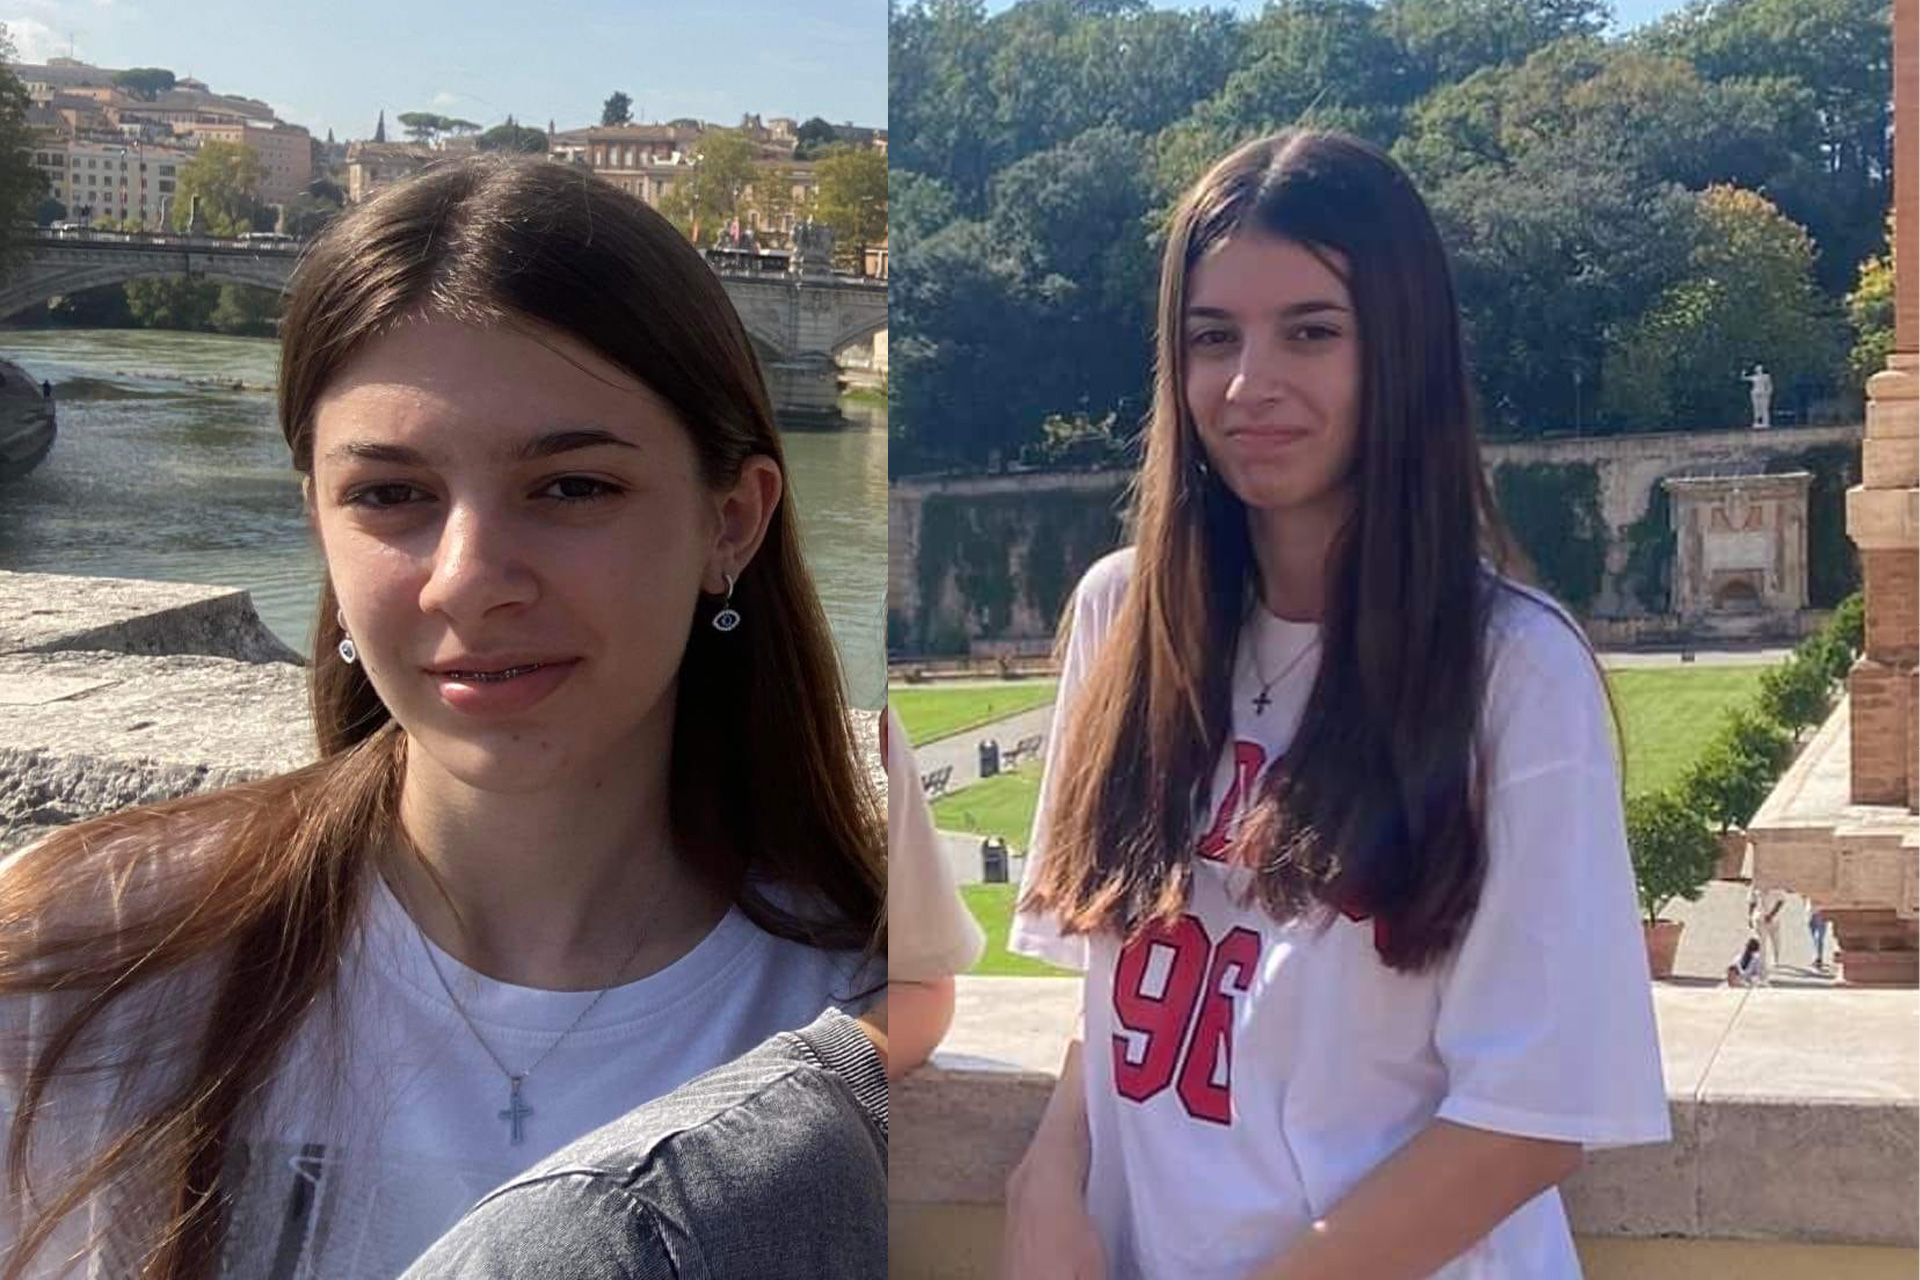  E lidhën dhe e futën në qese   gazetarja zbulon detaje tronditëse nga vrasja e 14 vjeçares në Shkup